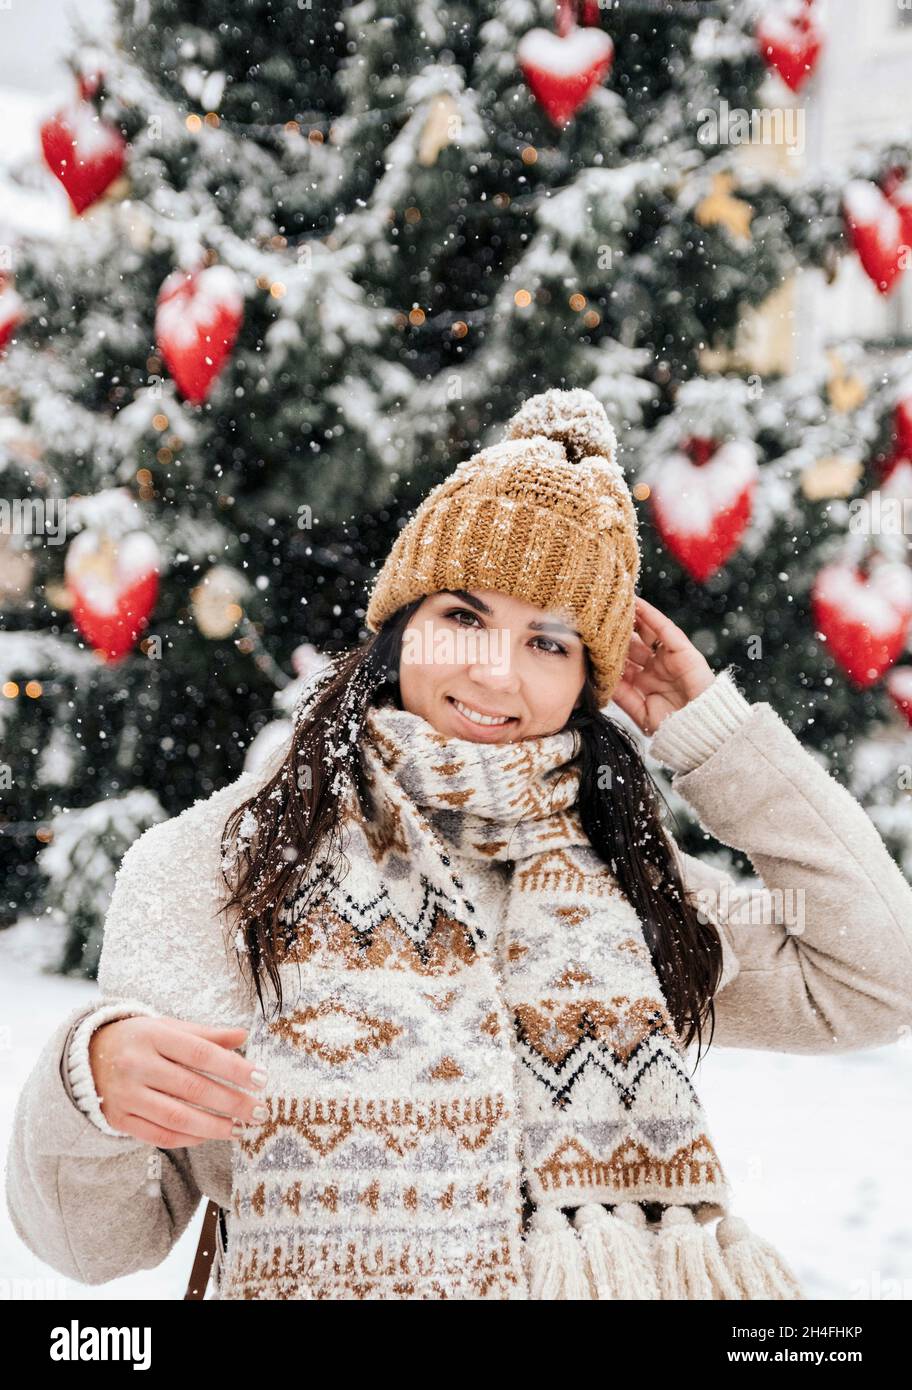 Ritratto di una giovane donna che indossa abiti invernali eleganti, in piedi davanti all'albero di natale in una giornata nevosa in città Foto Stock